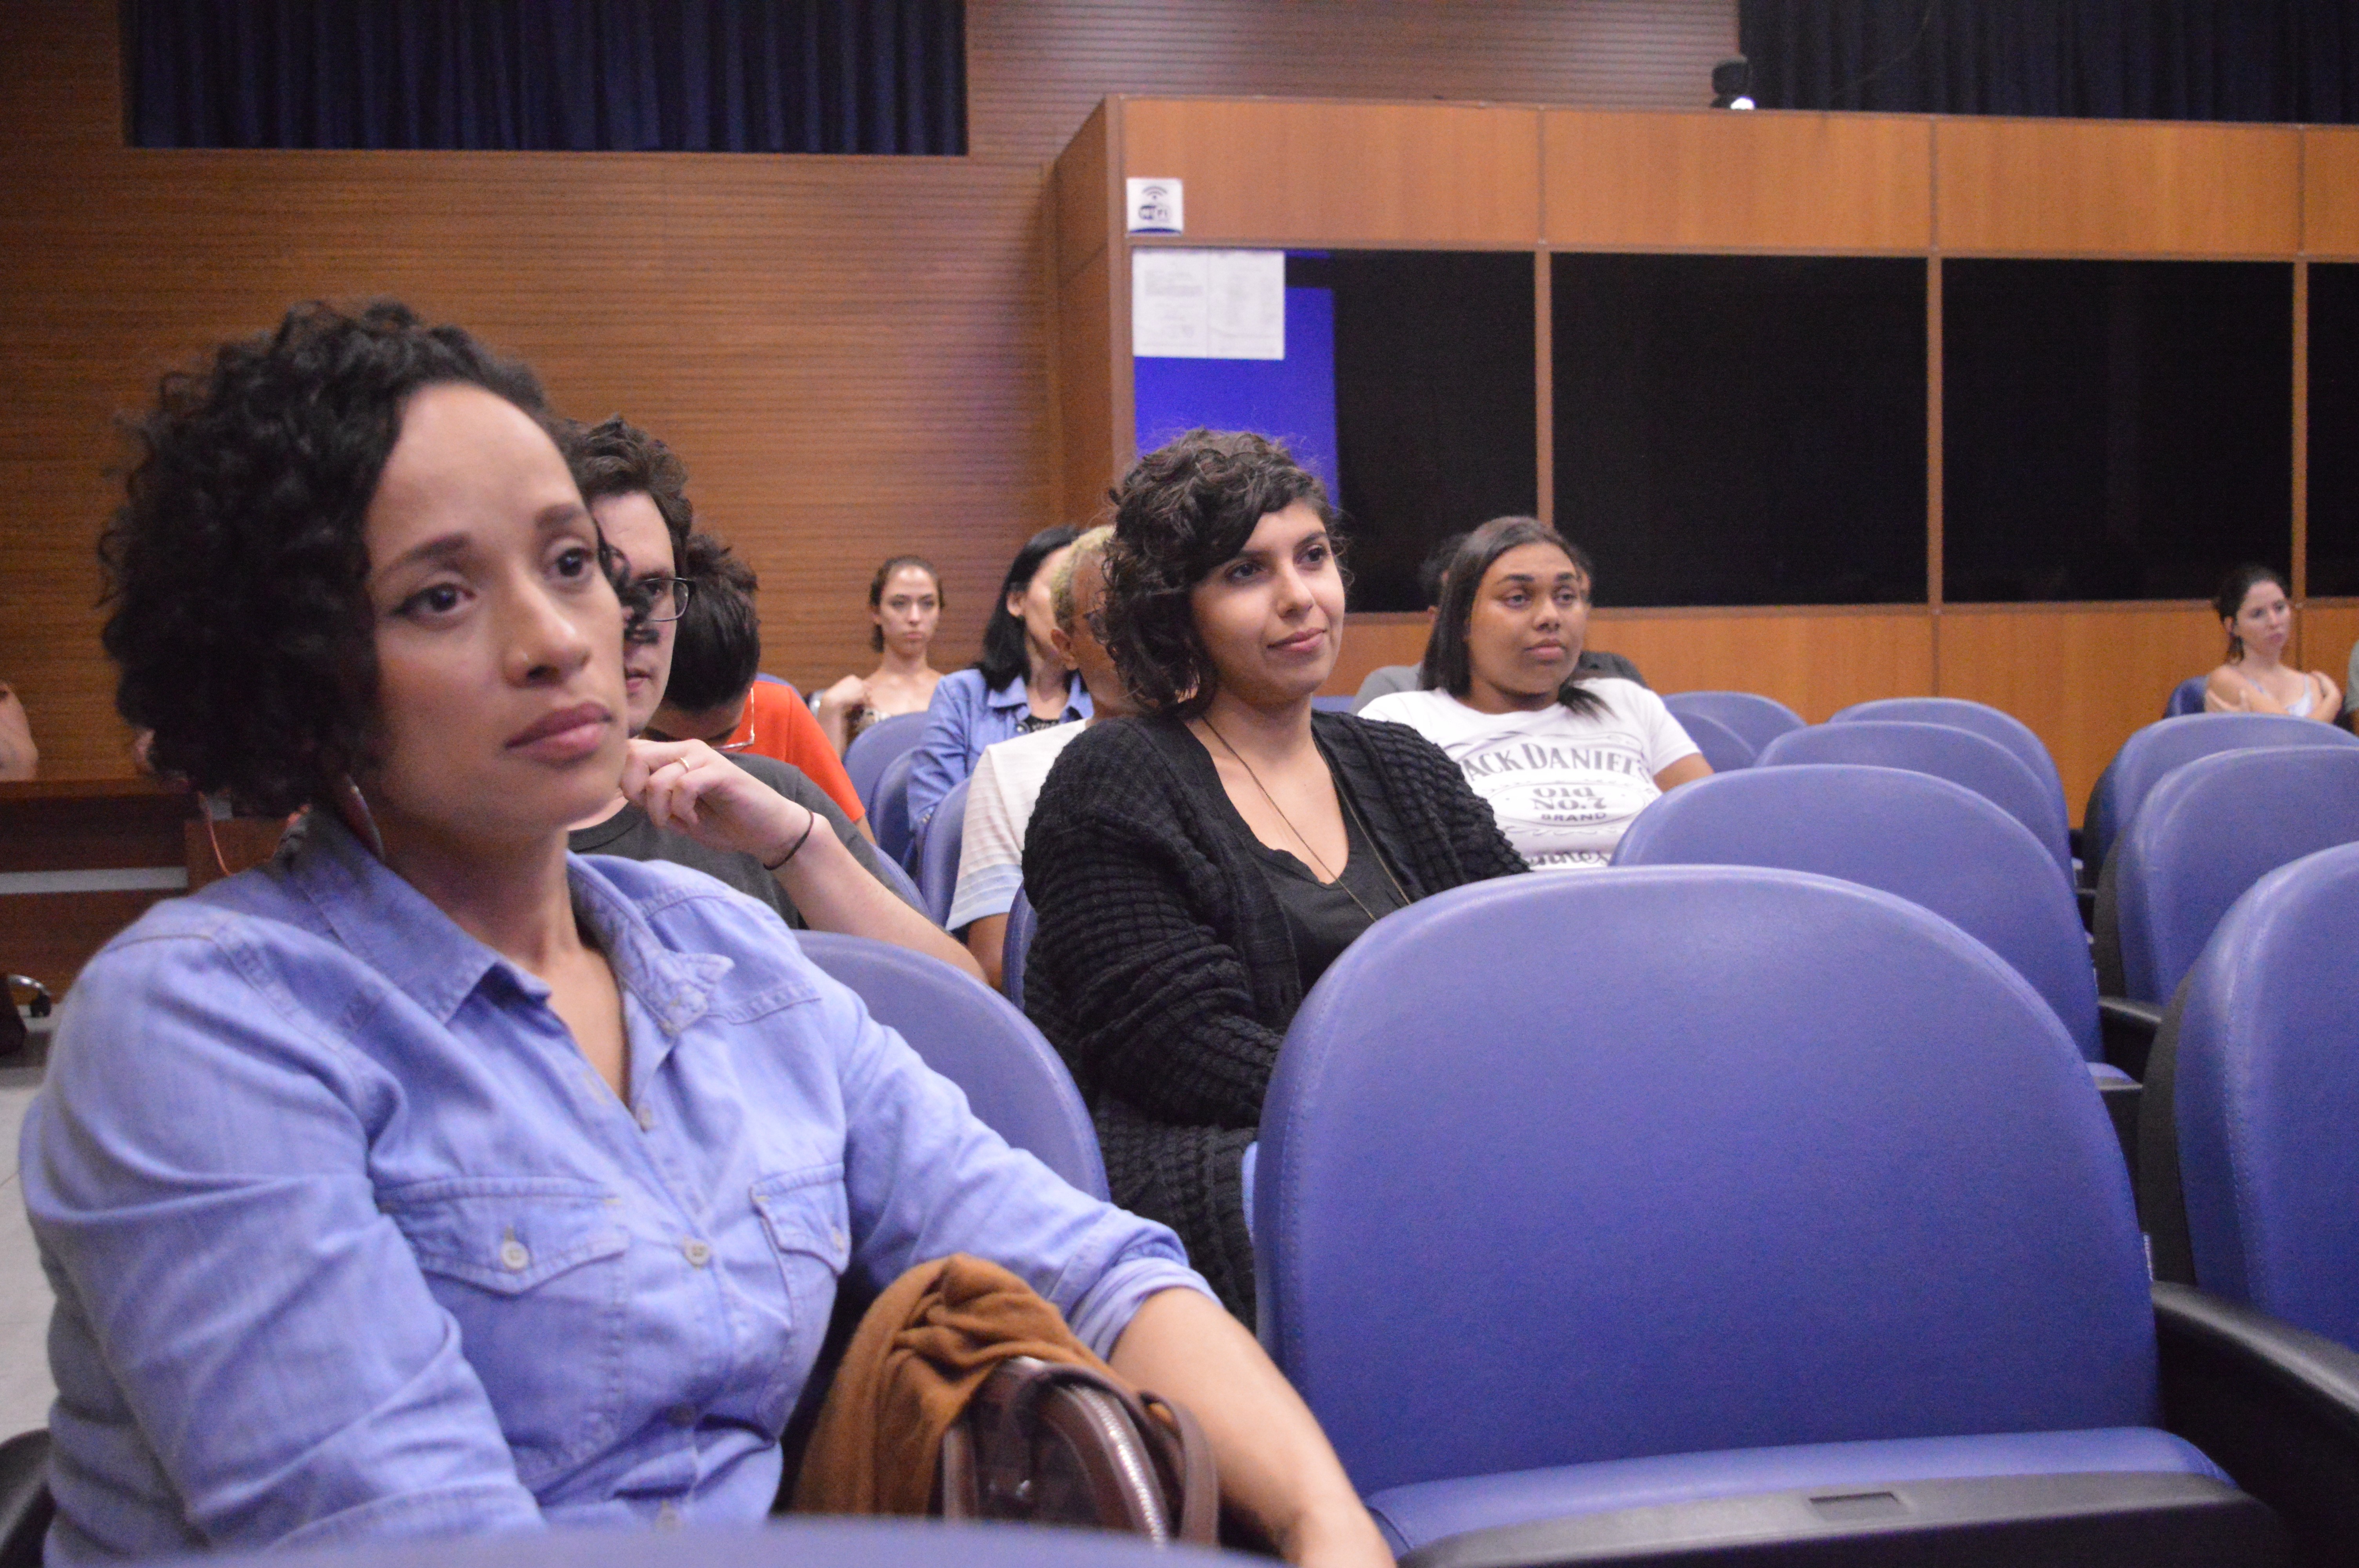 Participantes do evento. No primeiro plano imagem da Profa. Lucy Oliveira do Departamento de Ciências Sociais da UFSCAR.